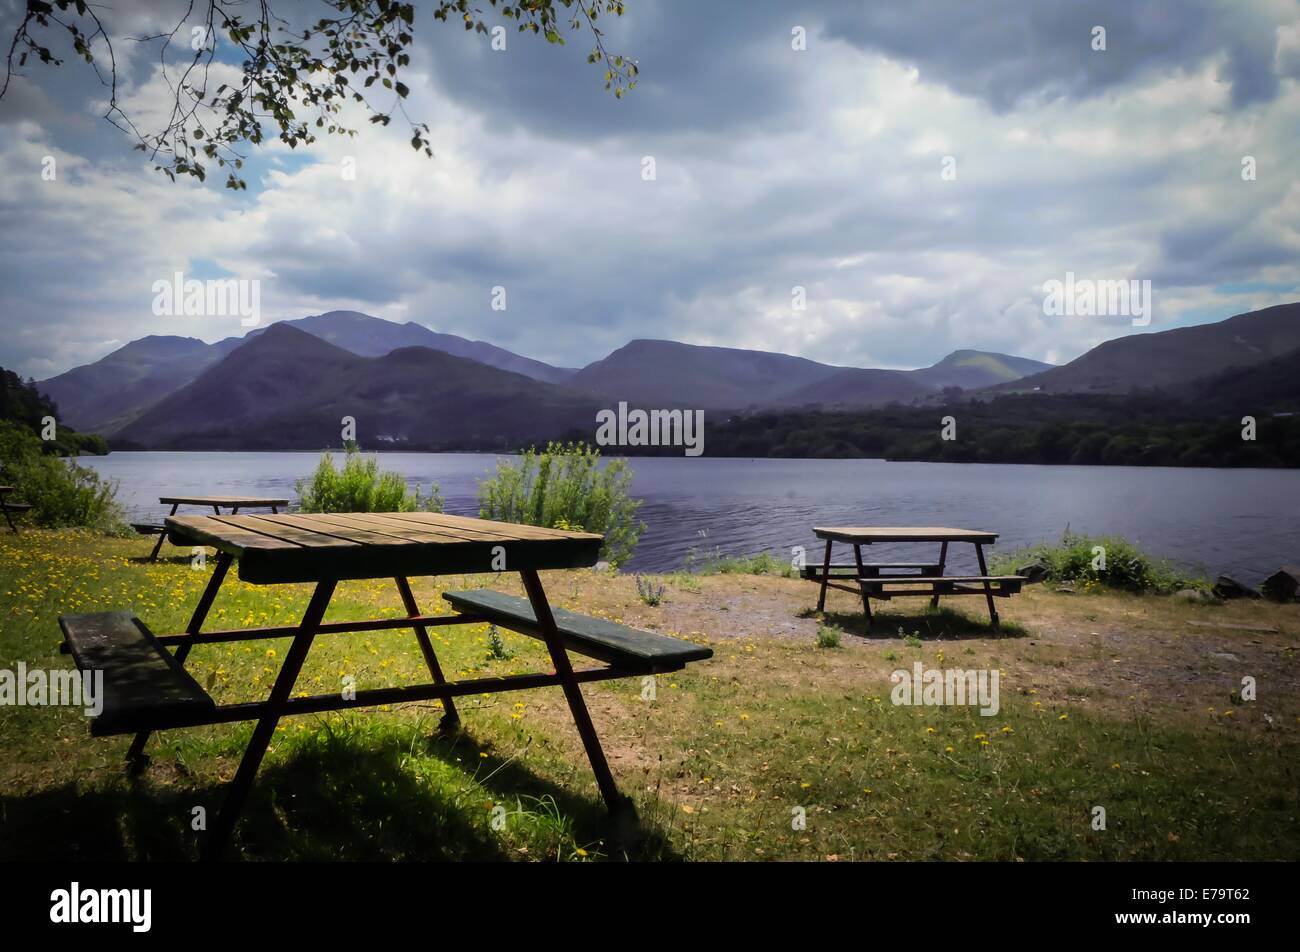 Rastplatz am See - Picknickbank am See, Llanberis - Snowdonia Stockfoto